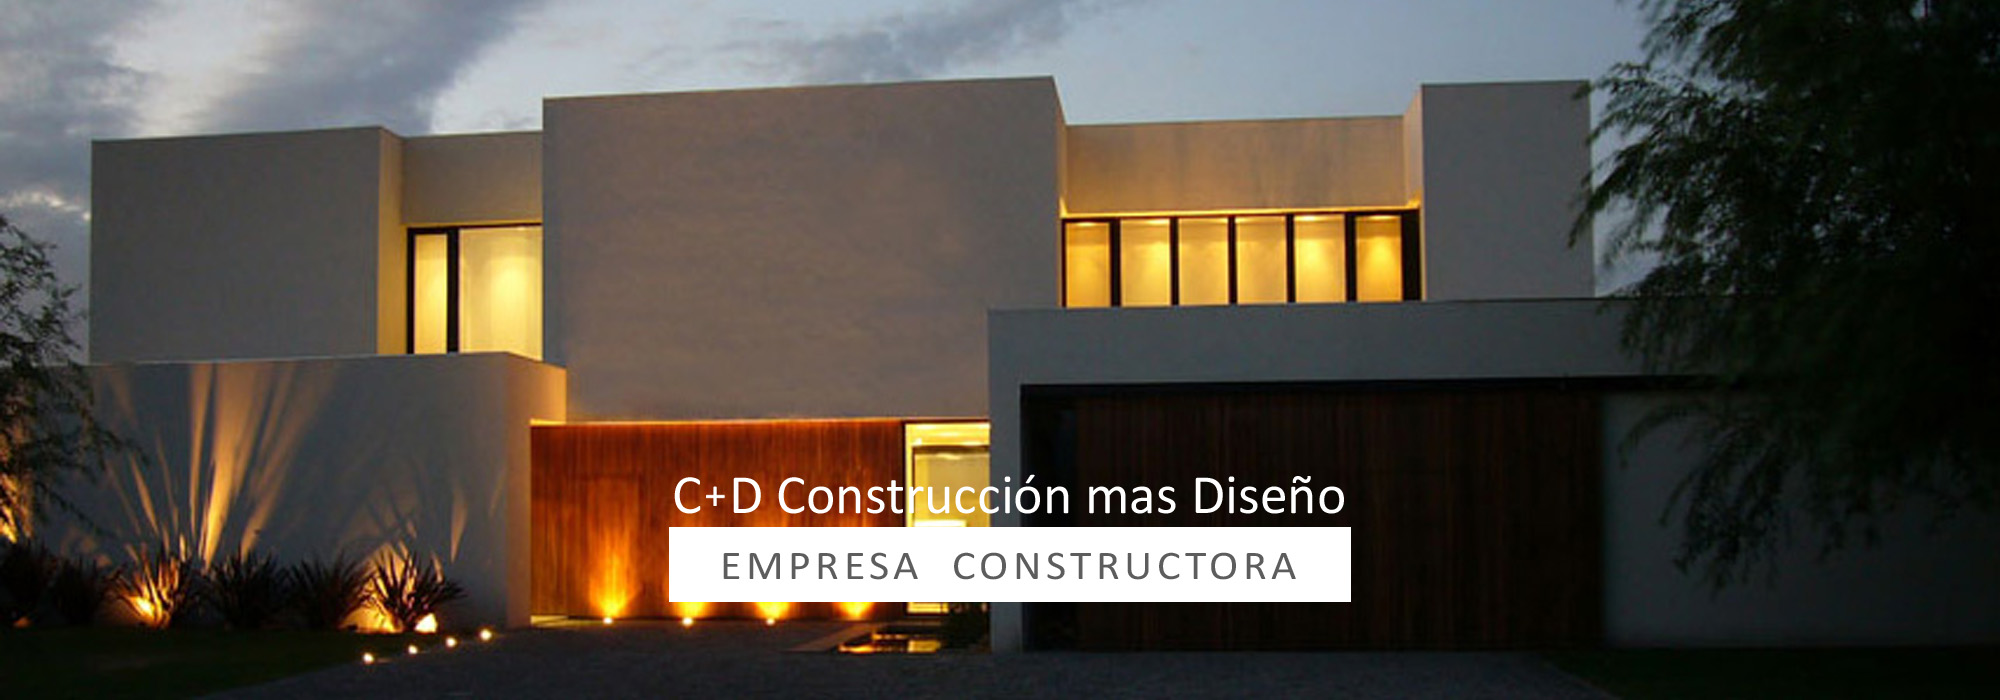 Empresa constructora y obras de arquitectura